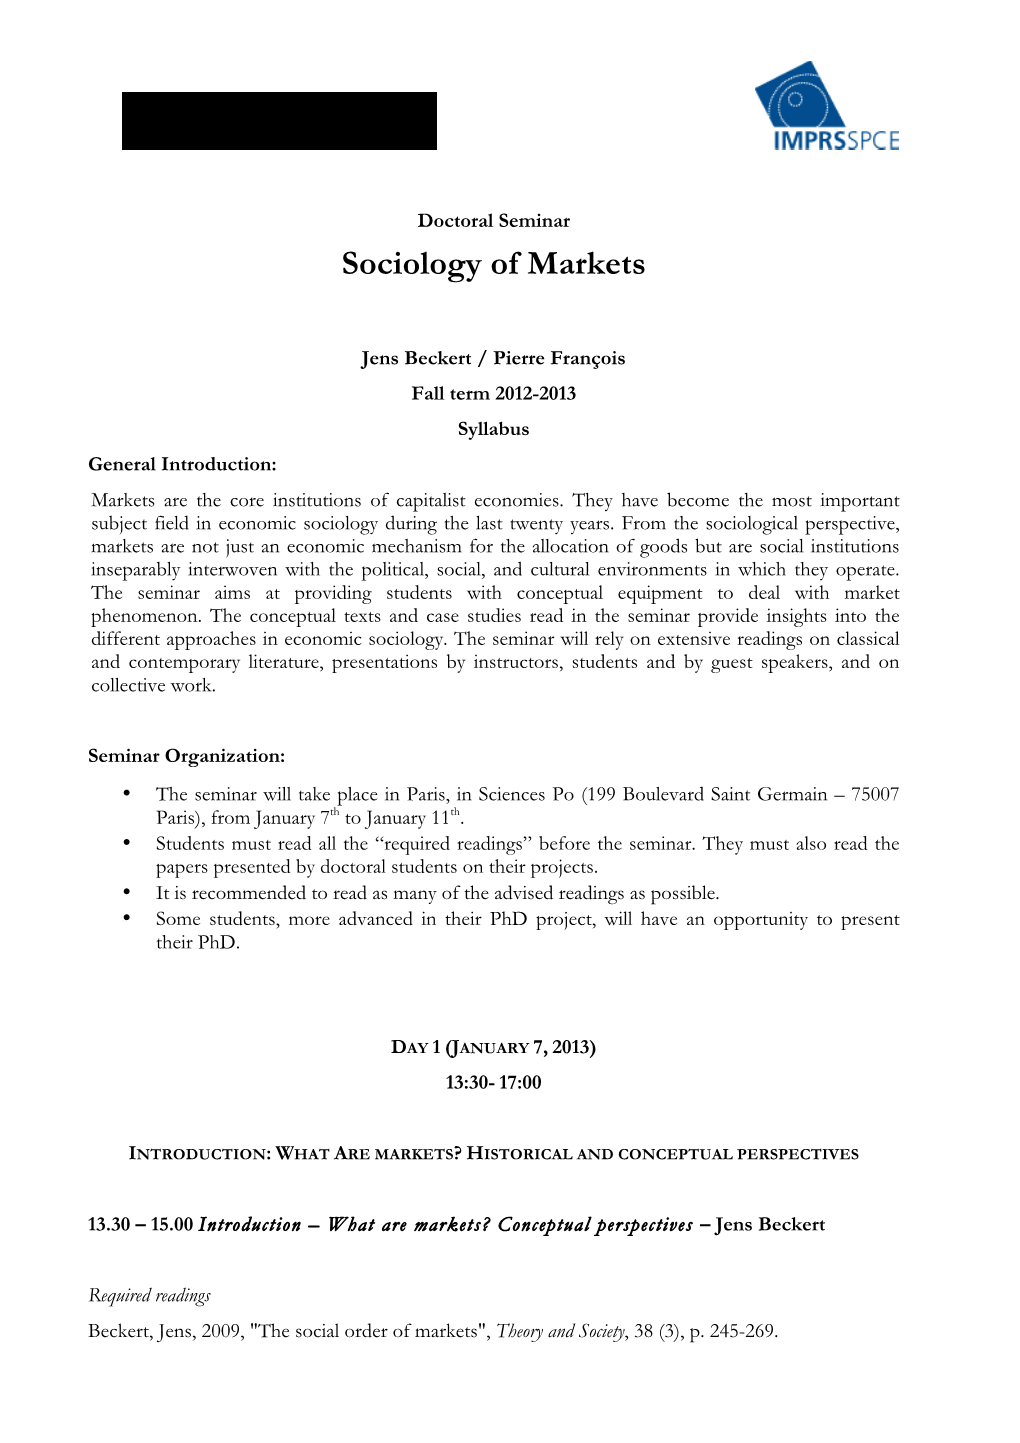 Sociology of Markets